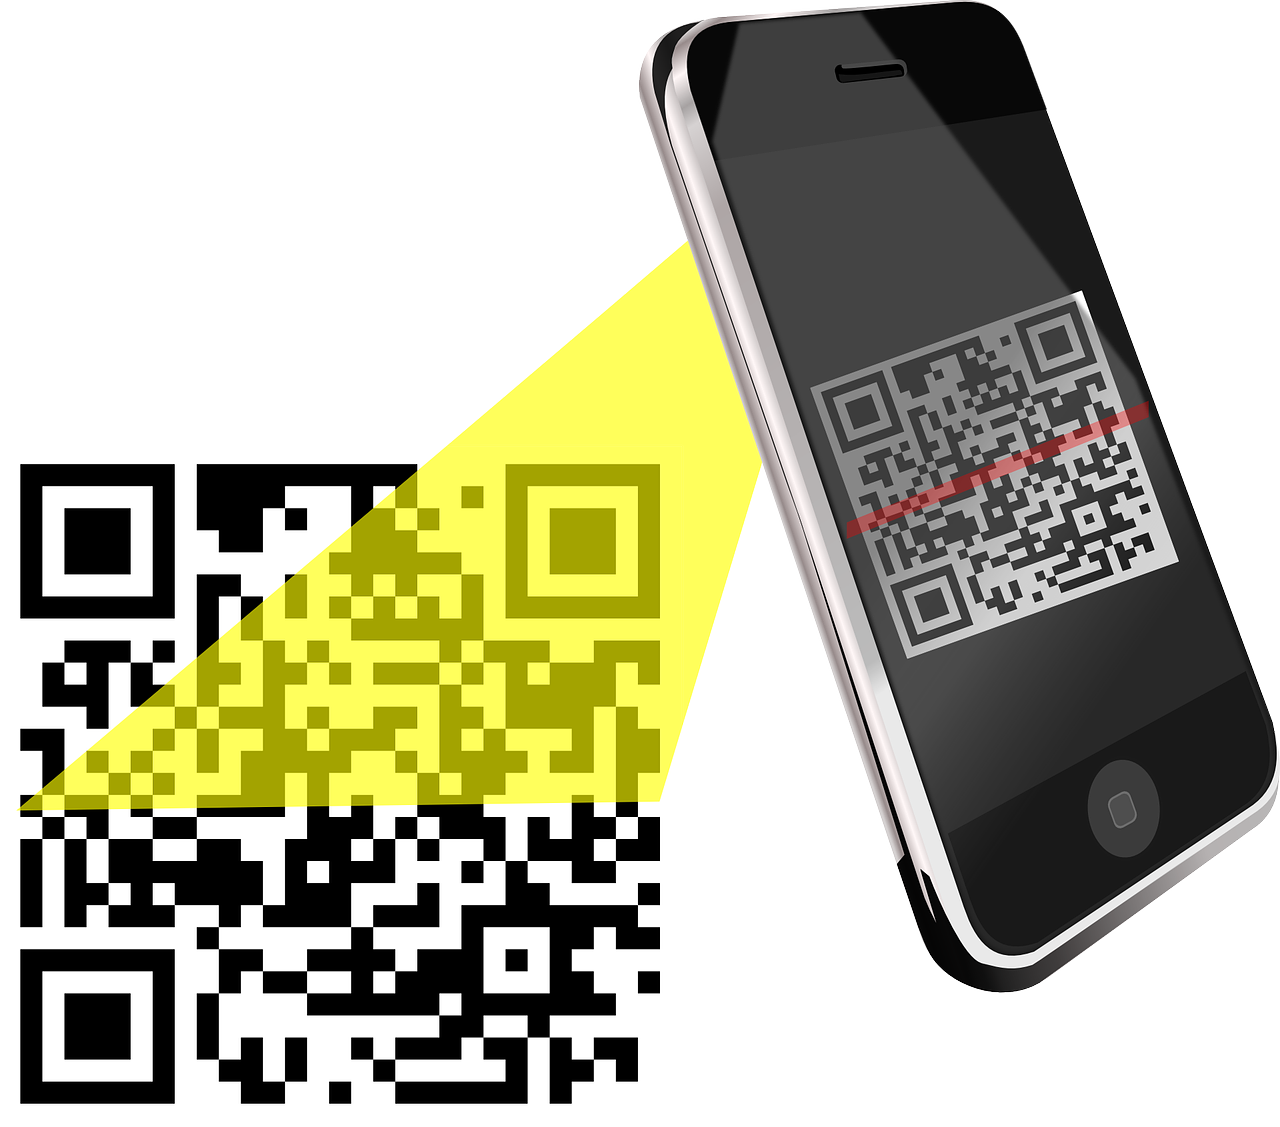 Считать код сканером. QR код. Смартфон QR код. Сканировать QR код. Иллюстрация смартфона с QR кодом.